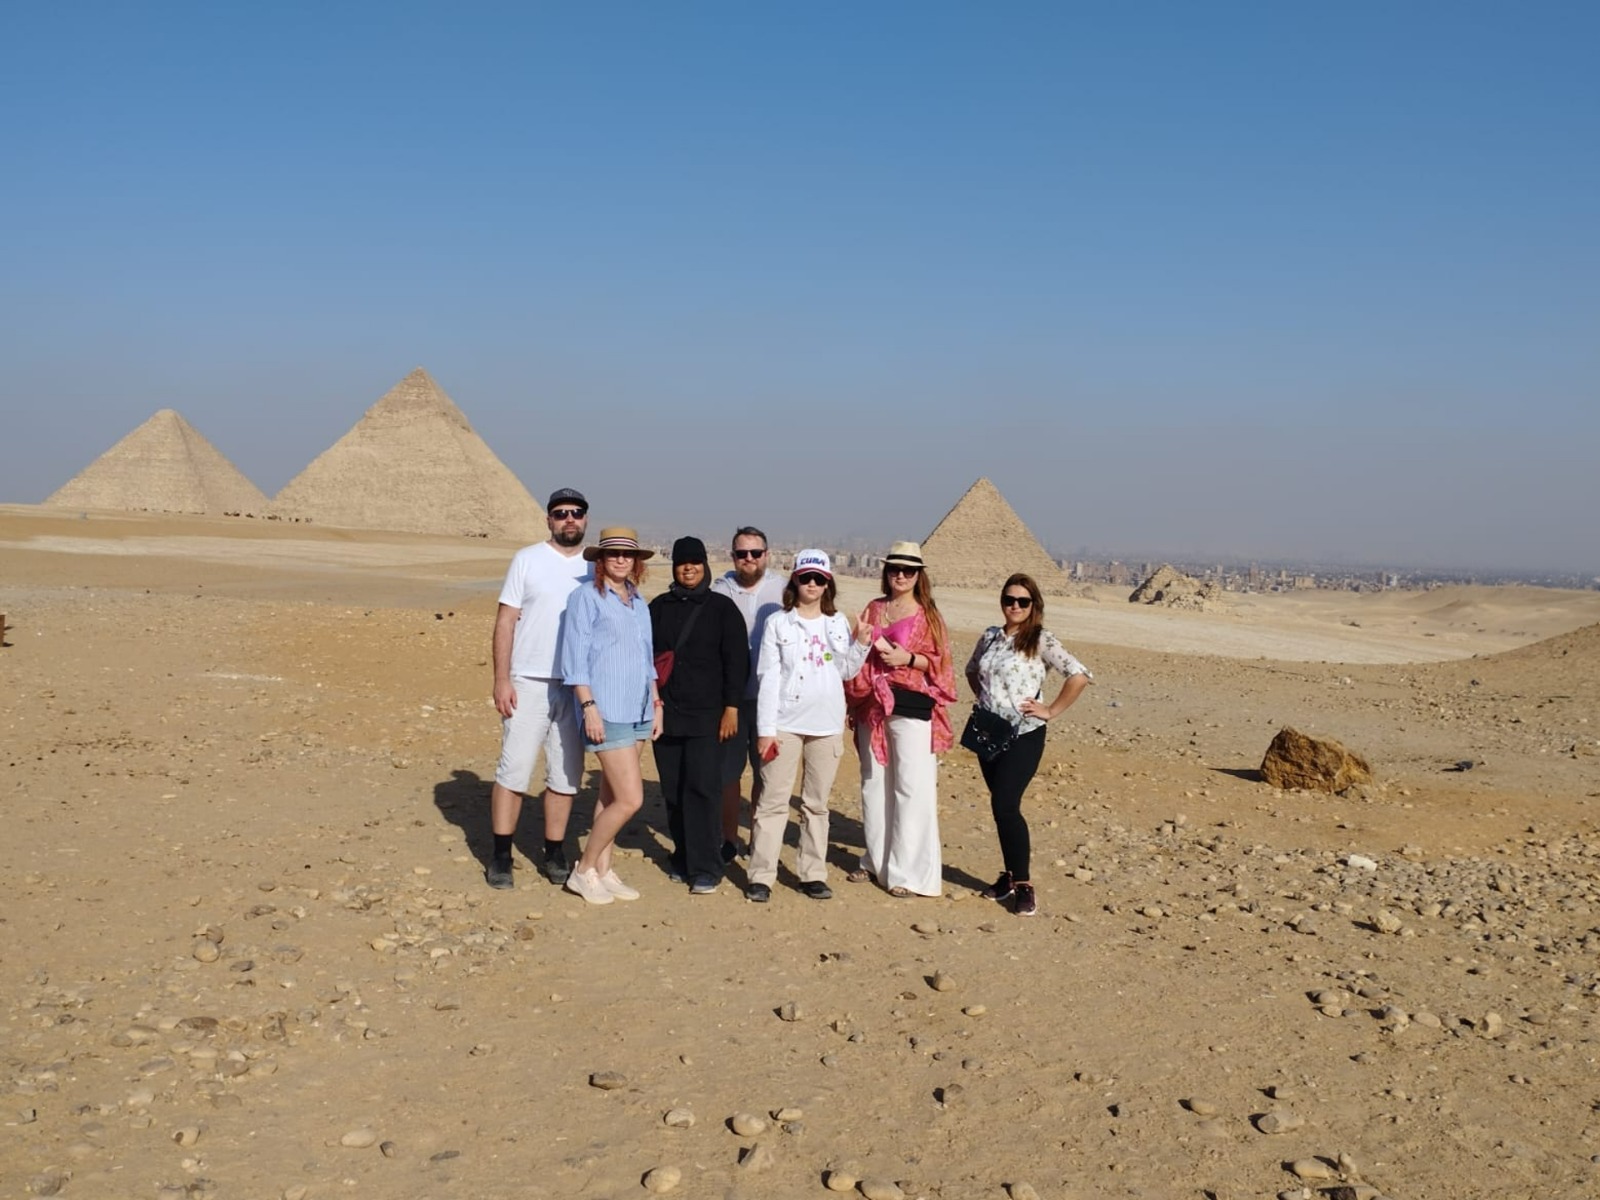 Новости египта для туристов на сегодня. Египет туризм. Туристы в Египте. Туризм в Египте кратко. Красивые туристы в Египте.